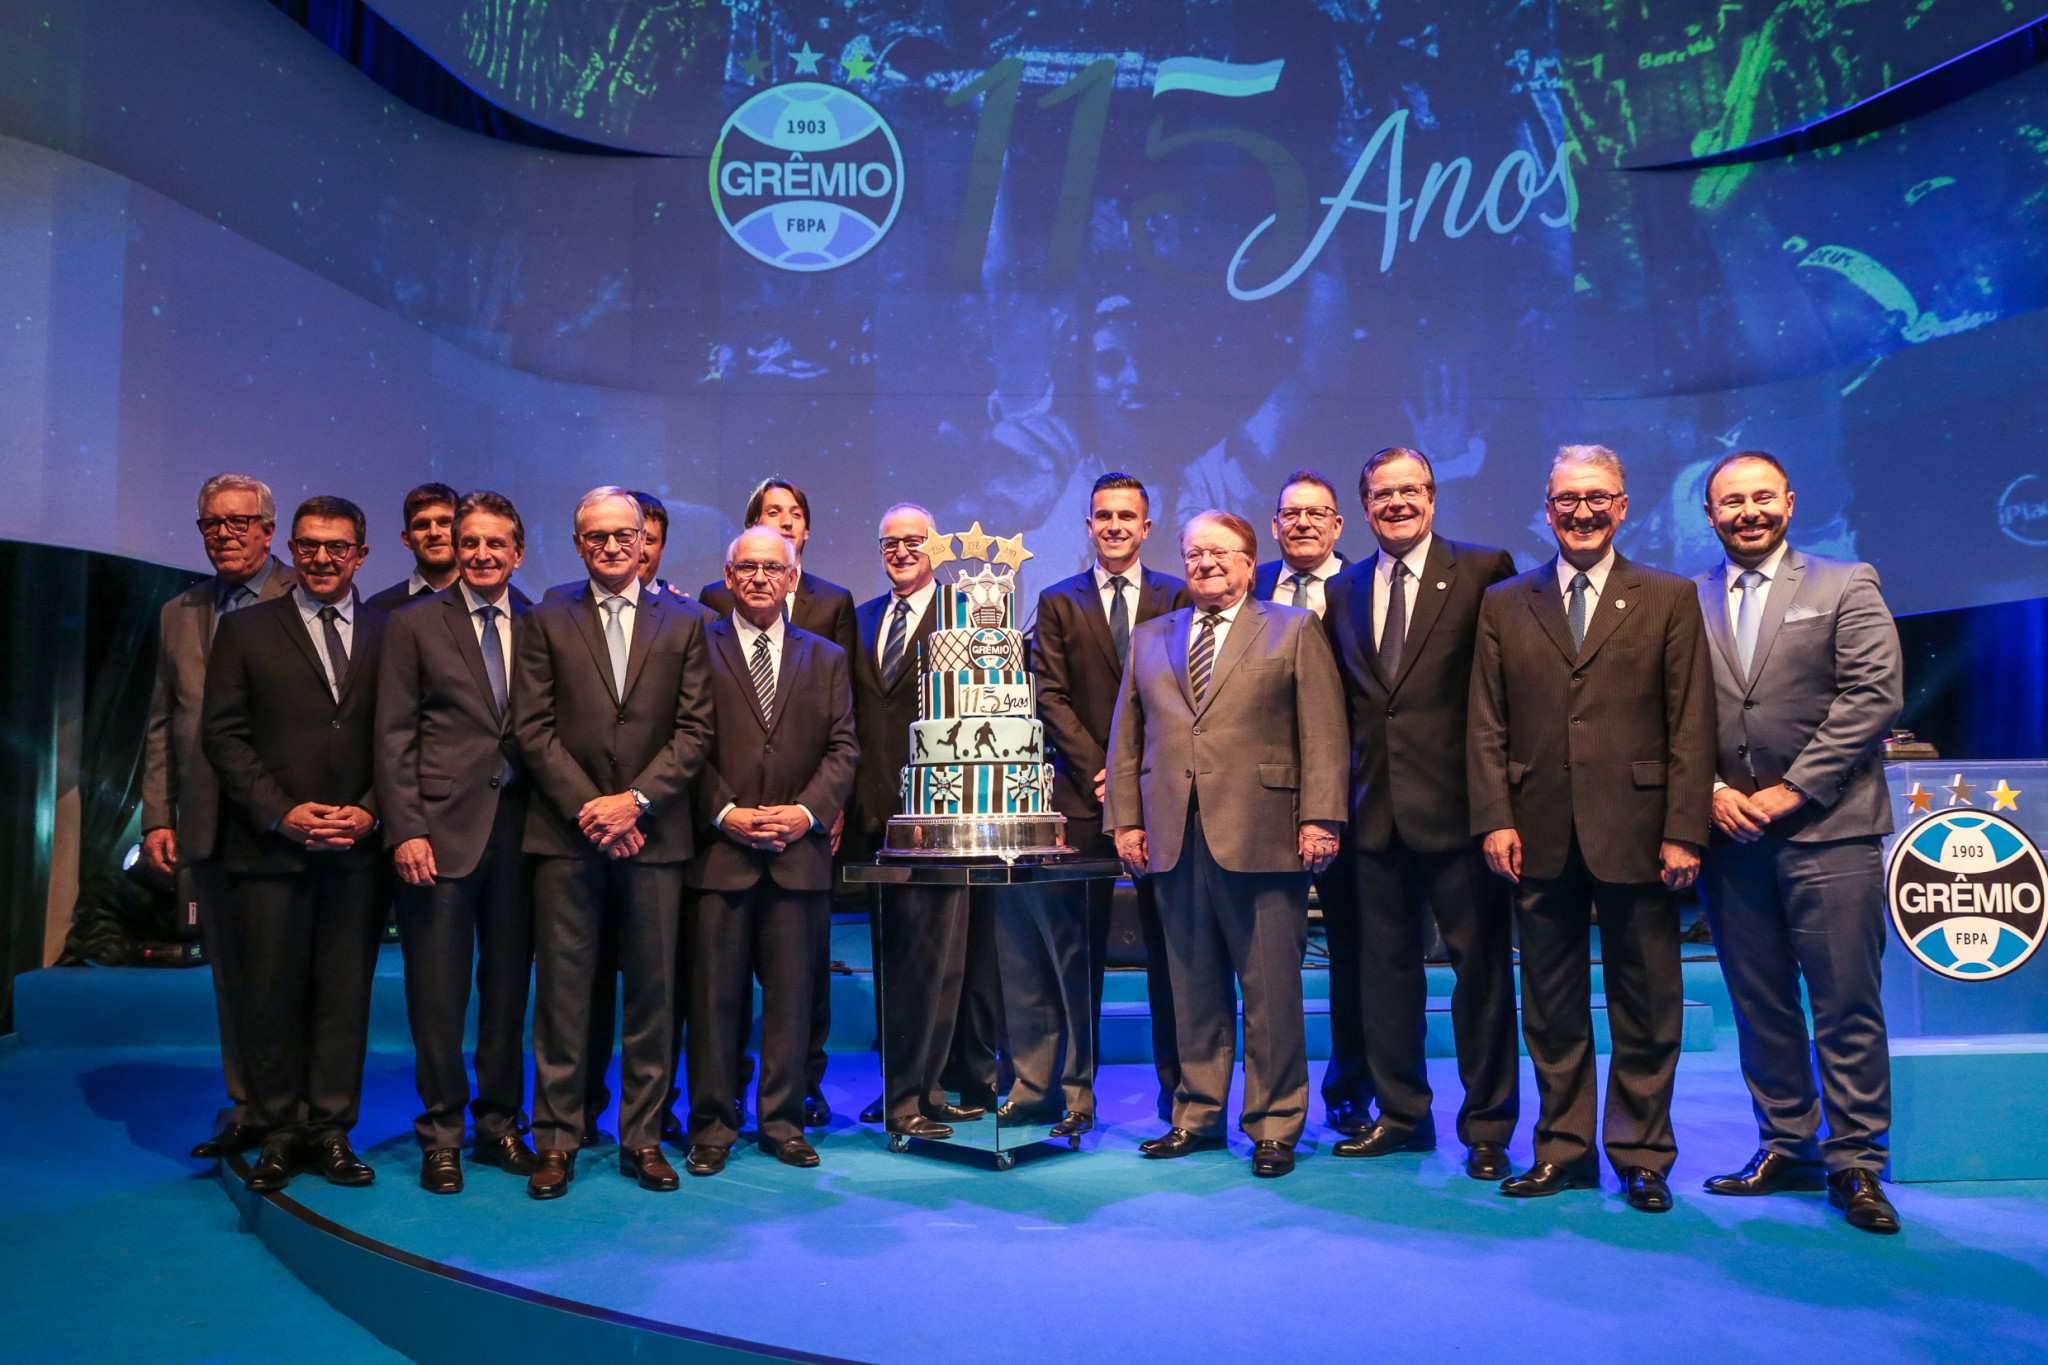 Club Nacional de Football celebra 115 anos - CONMEBOL